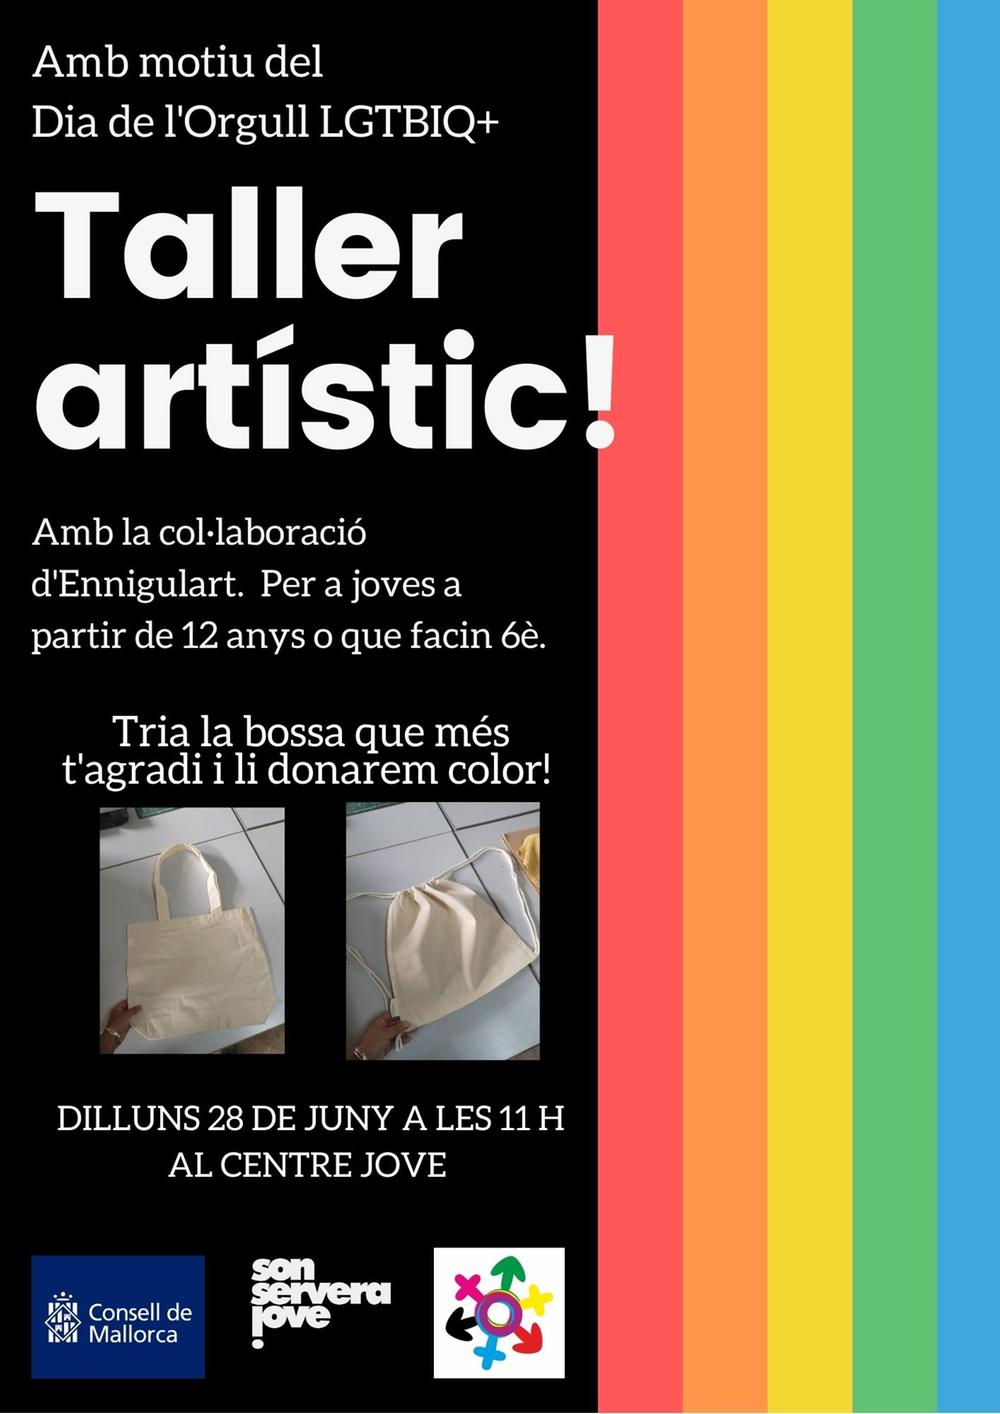 Taller artístic: Dia de l'Orgull LGTBIQ+